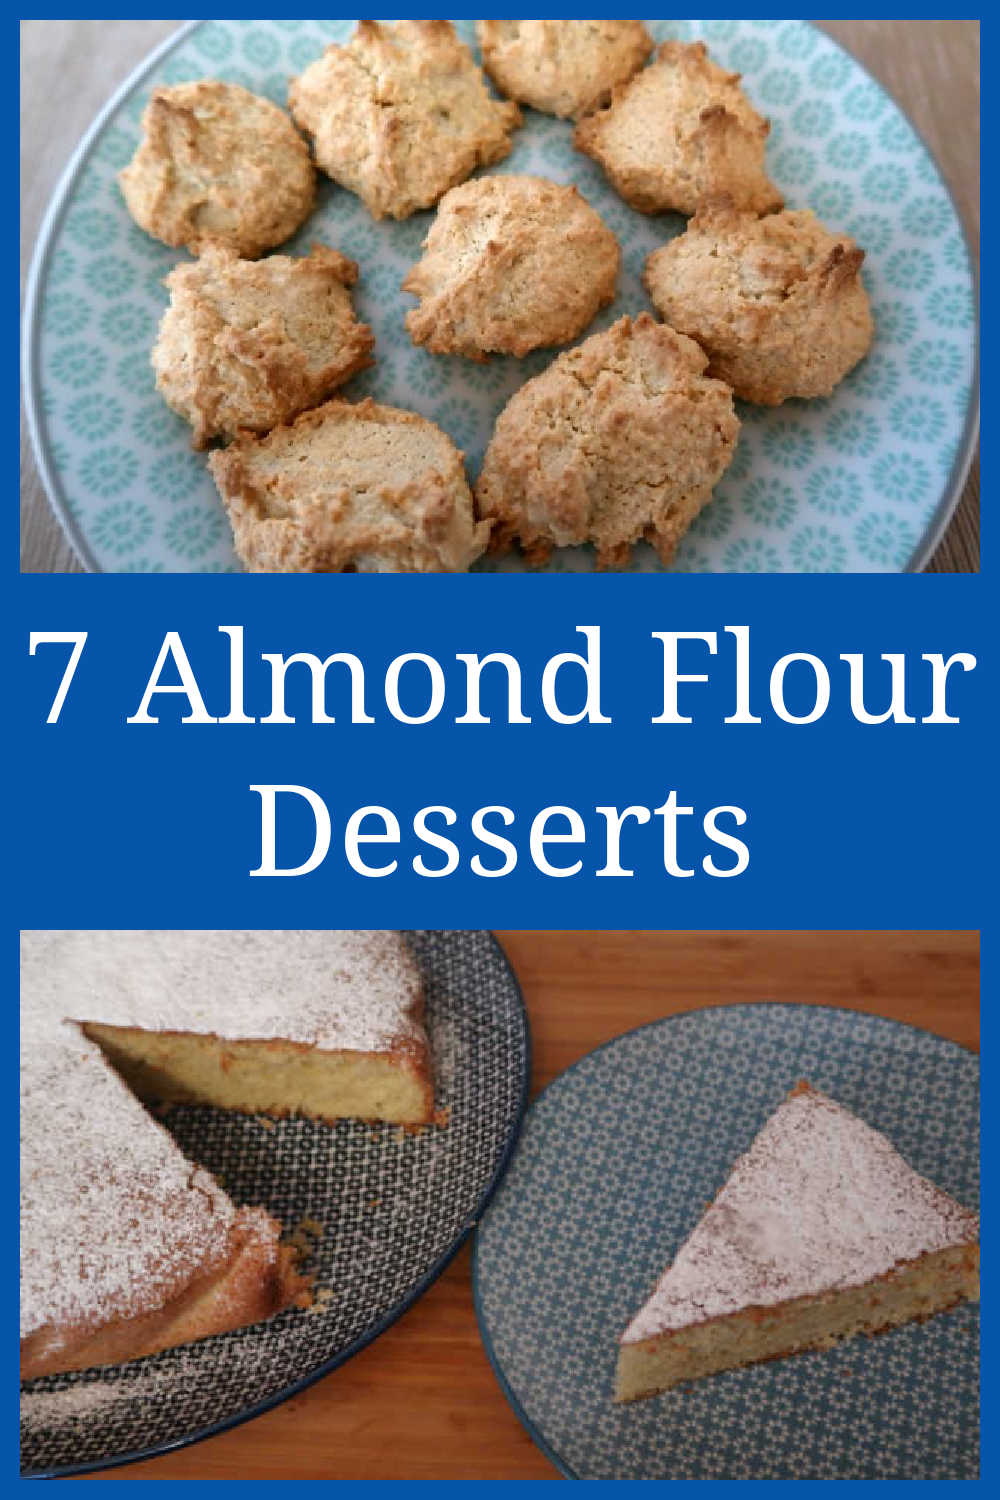 Almond Flour Desserts Recipes - 7 Best Gluten-Free Ideas